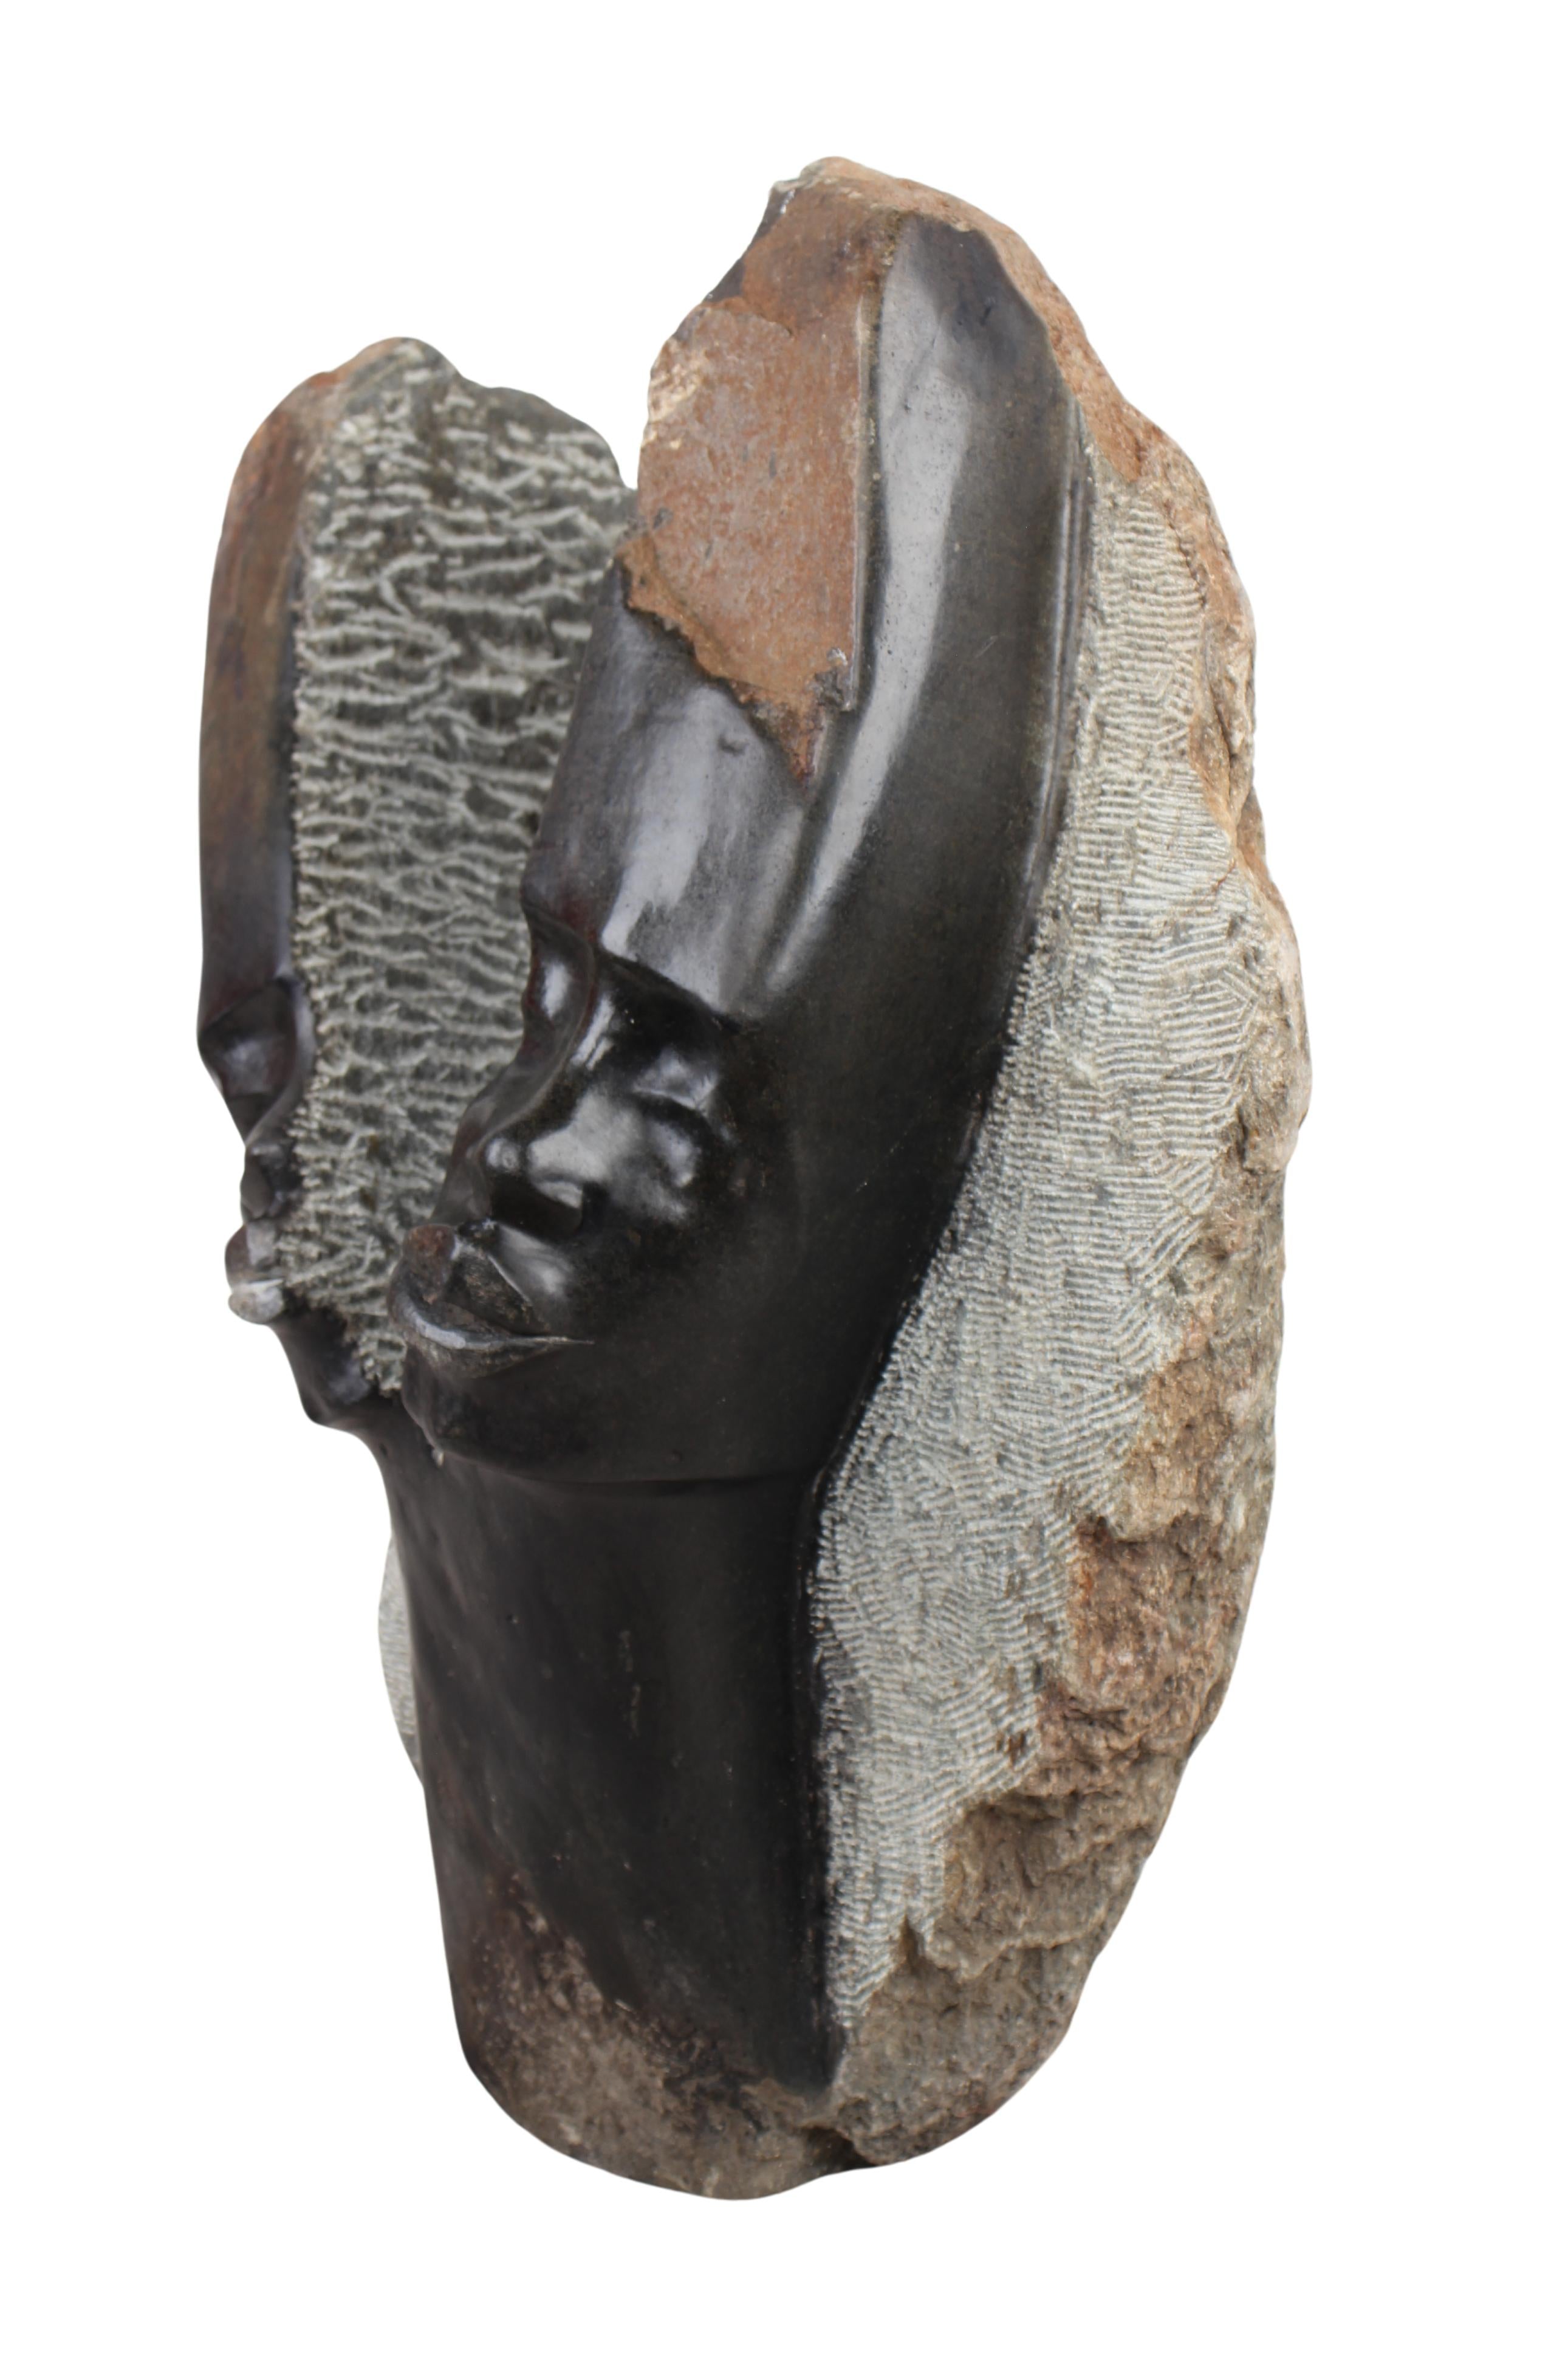 Shona Tribe Springstone Head Abstract ~26.8" Tall (New 2024) - Shona Stone